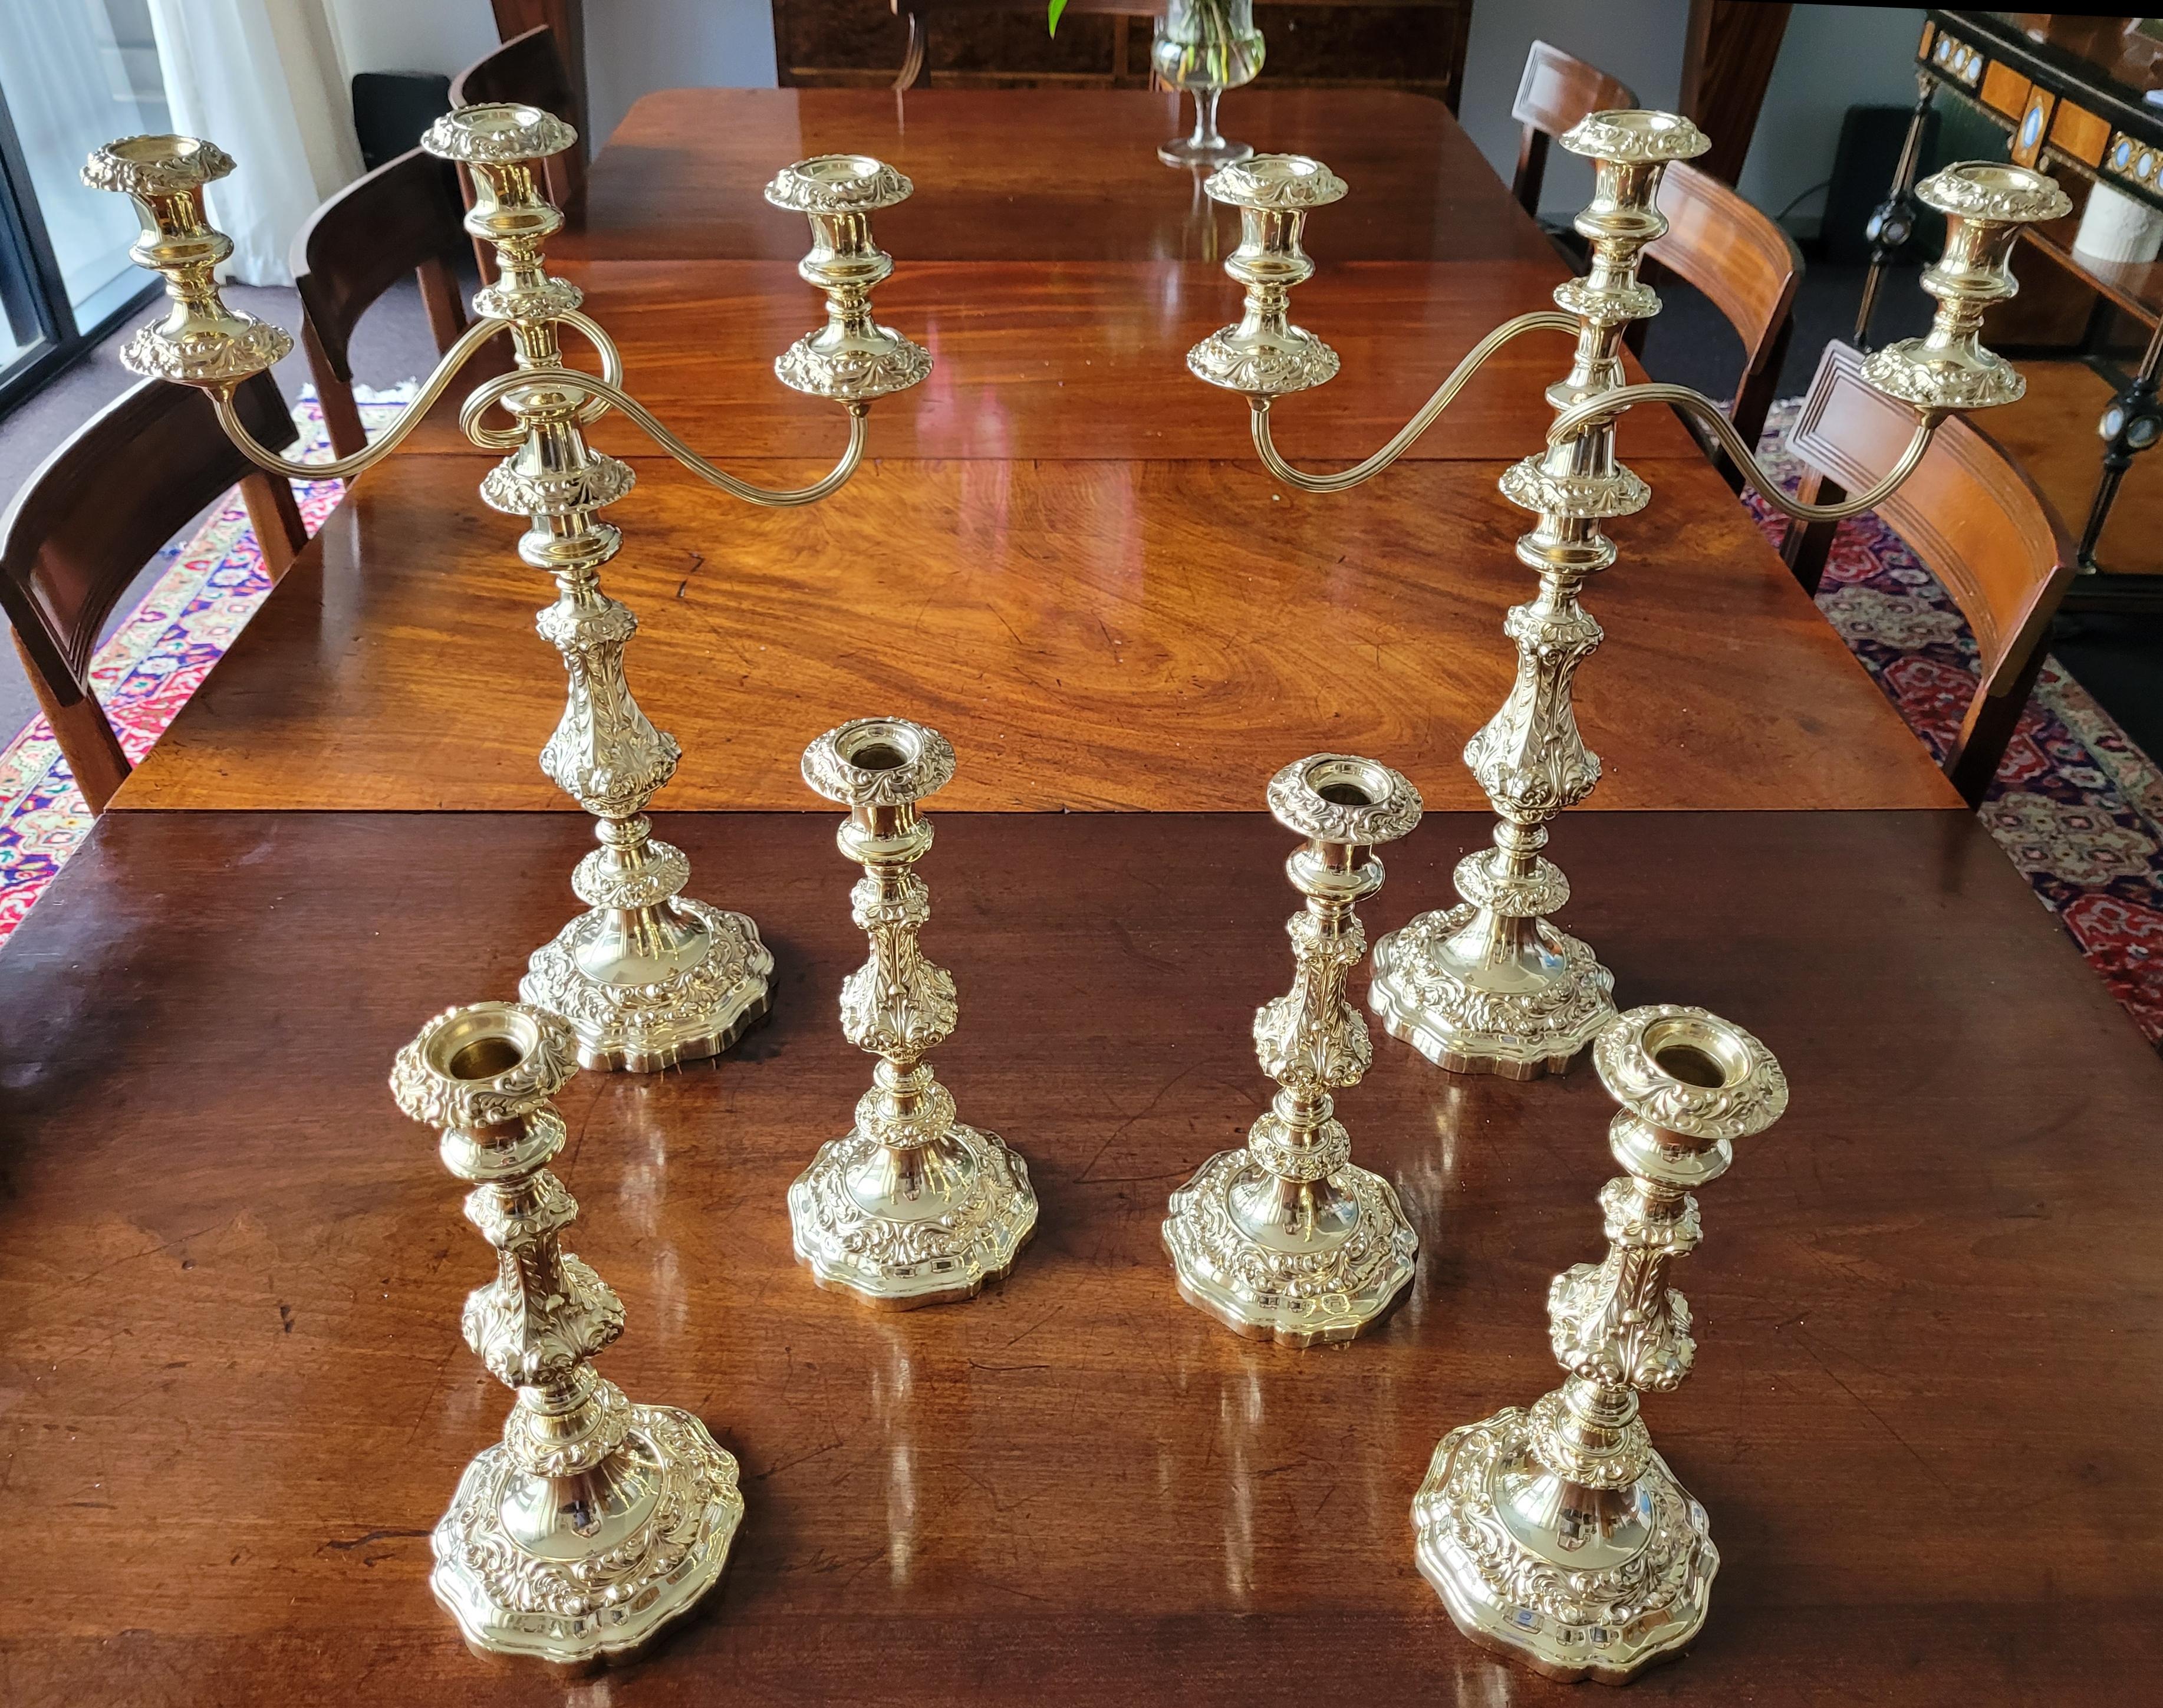 Ein prächtiges vergoldetes Tischset, bestehend aus zwei Kandelabern mit drei Branches und vier einzelnen Kerzenhaltern. Die Kandelaber können durch Abnehmen des Arms zu großen Einzelstäben umfunktioniert werden. Die Bobeches sind zur einfachen